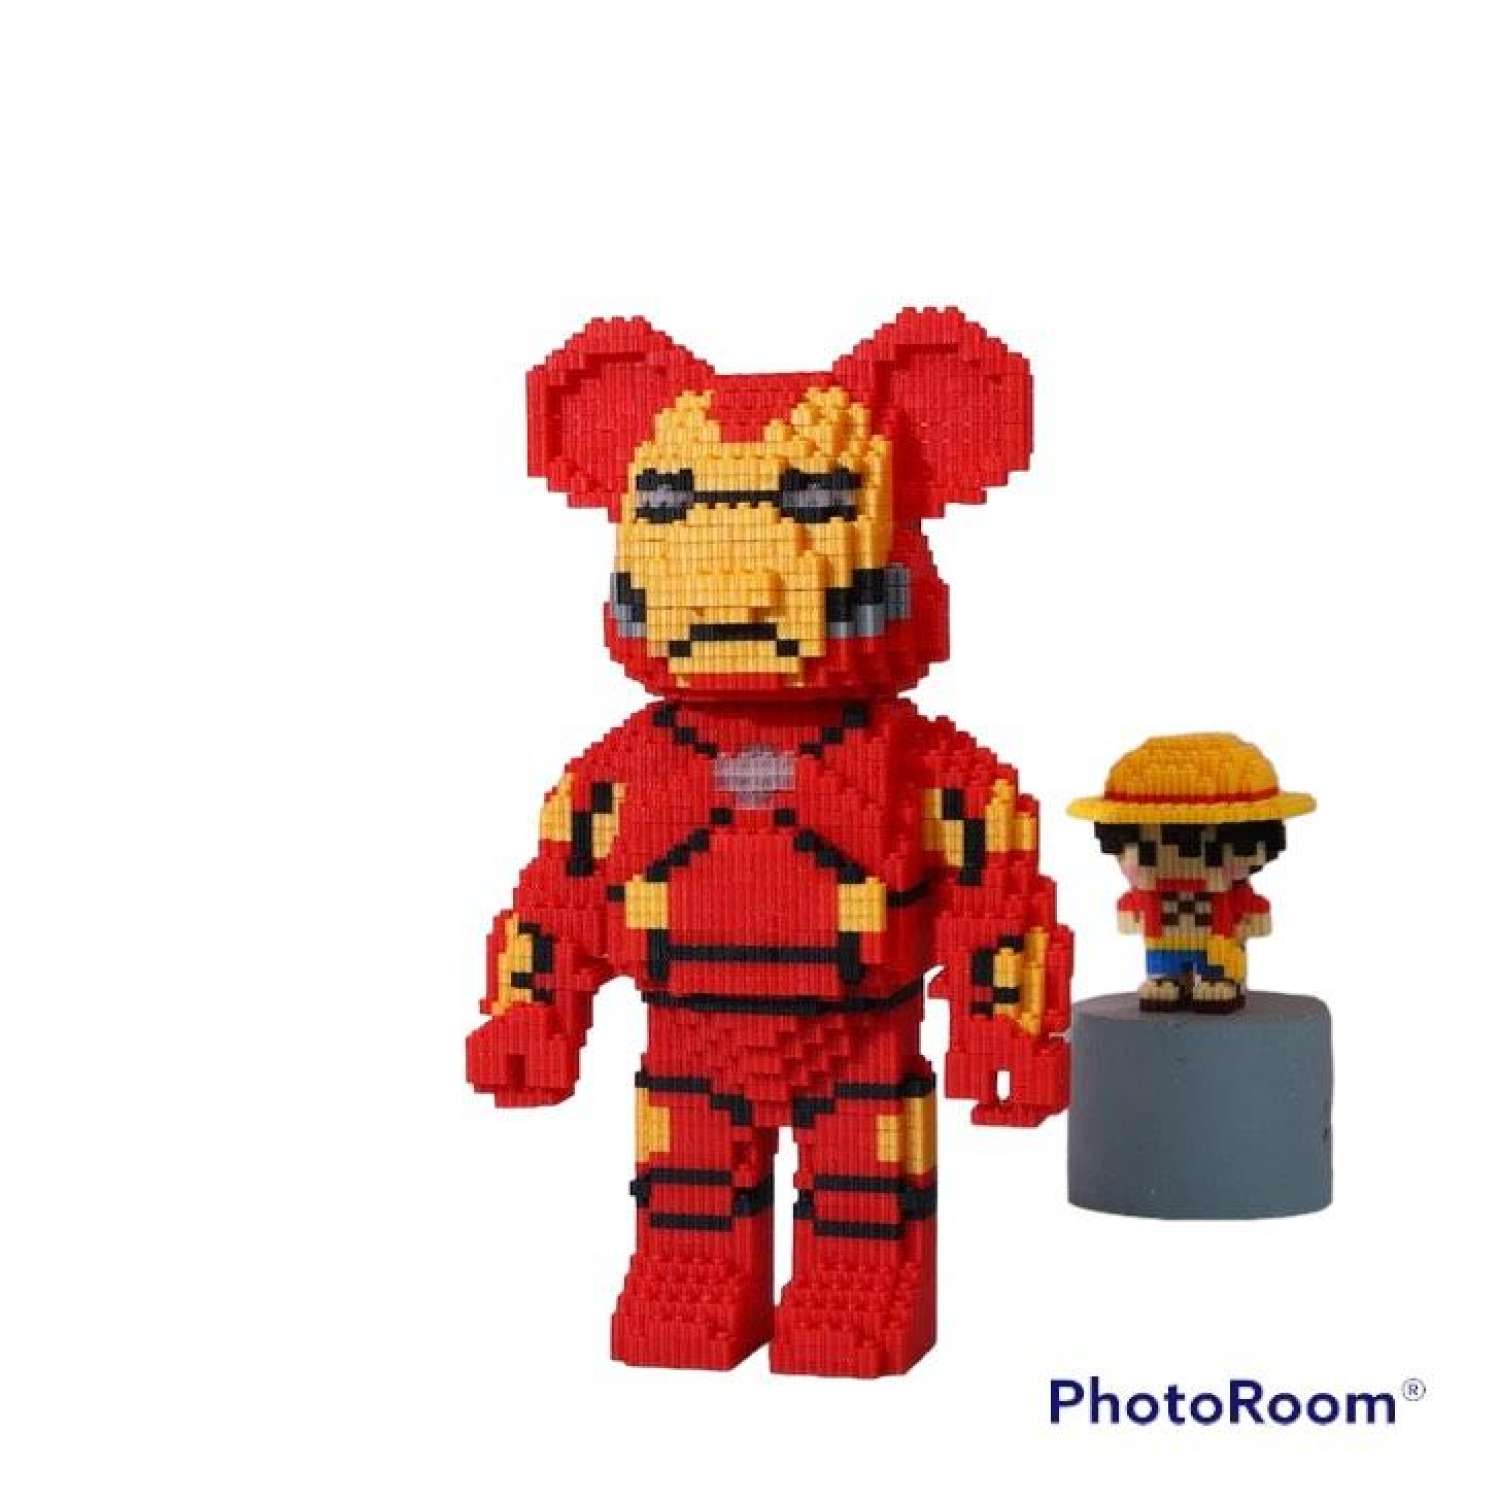 3D Perler Bead Iron Man 